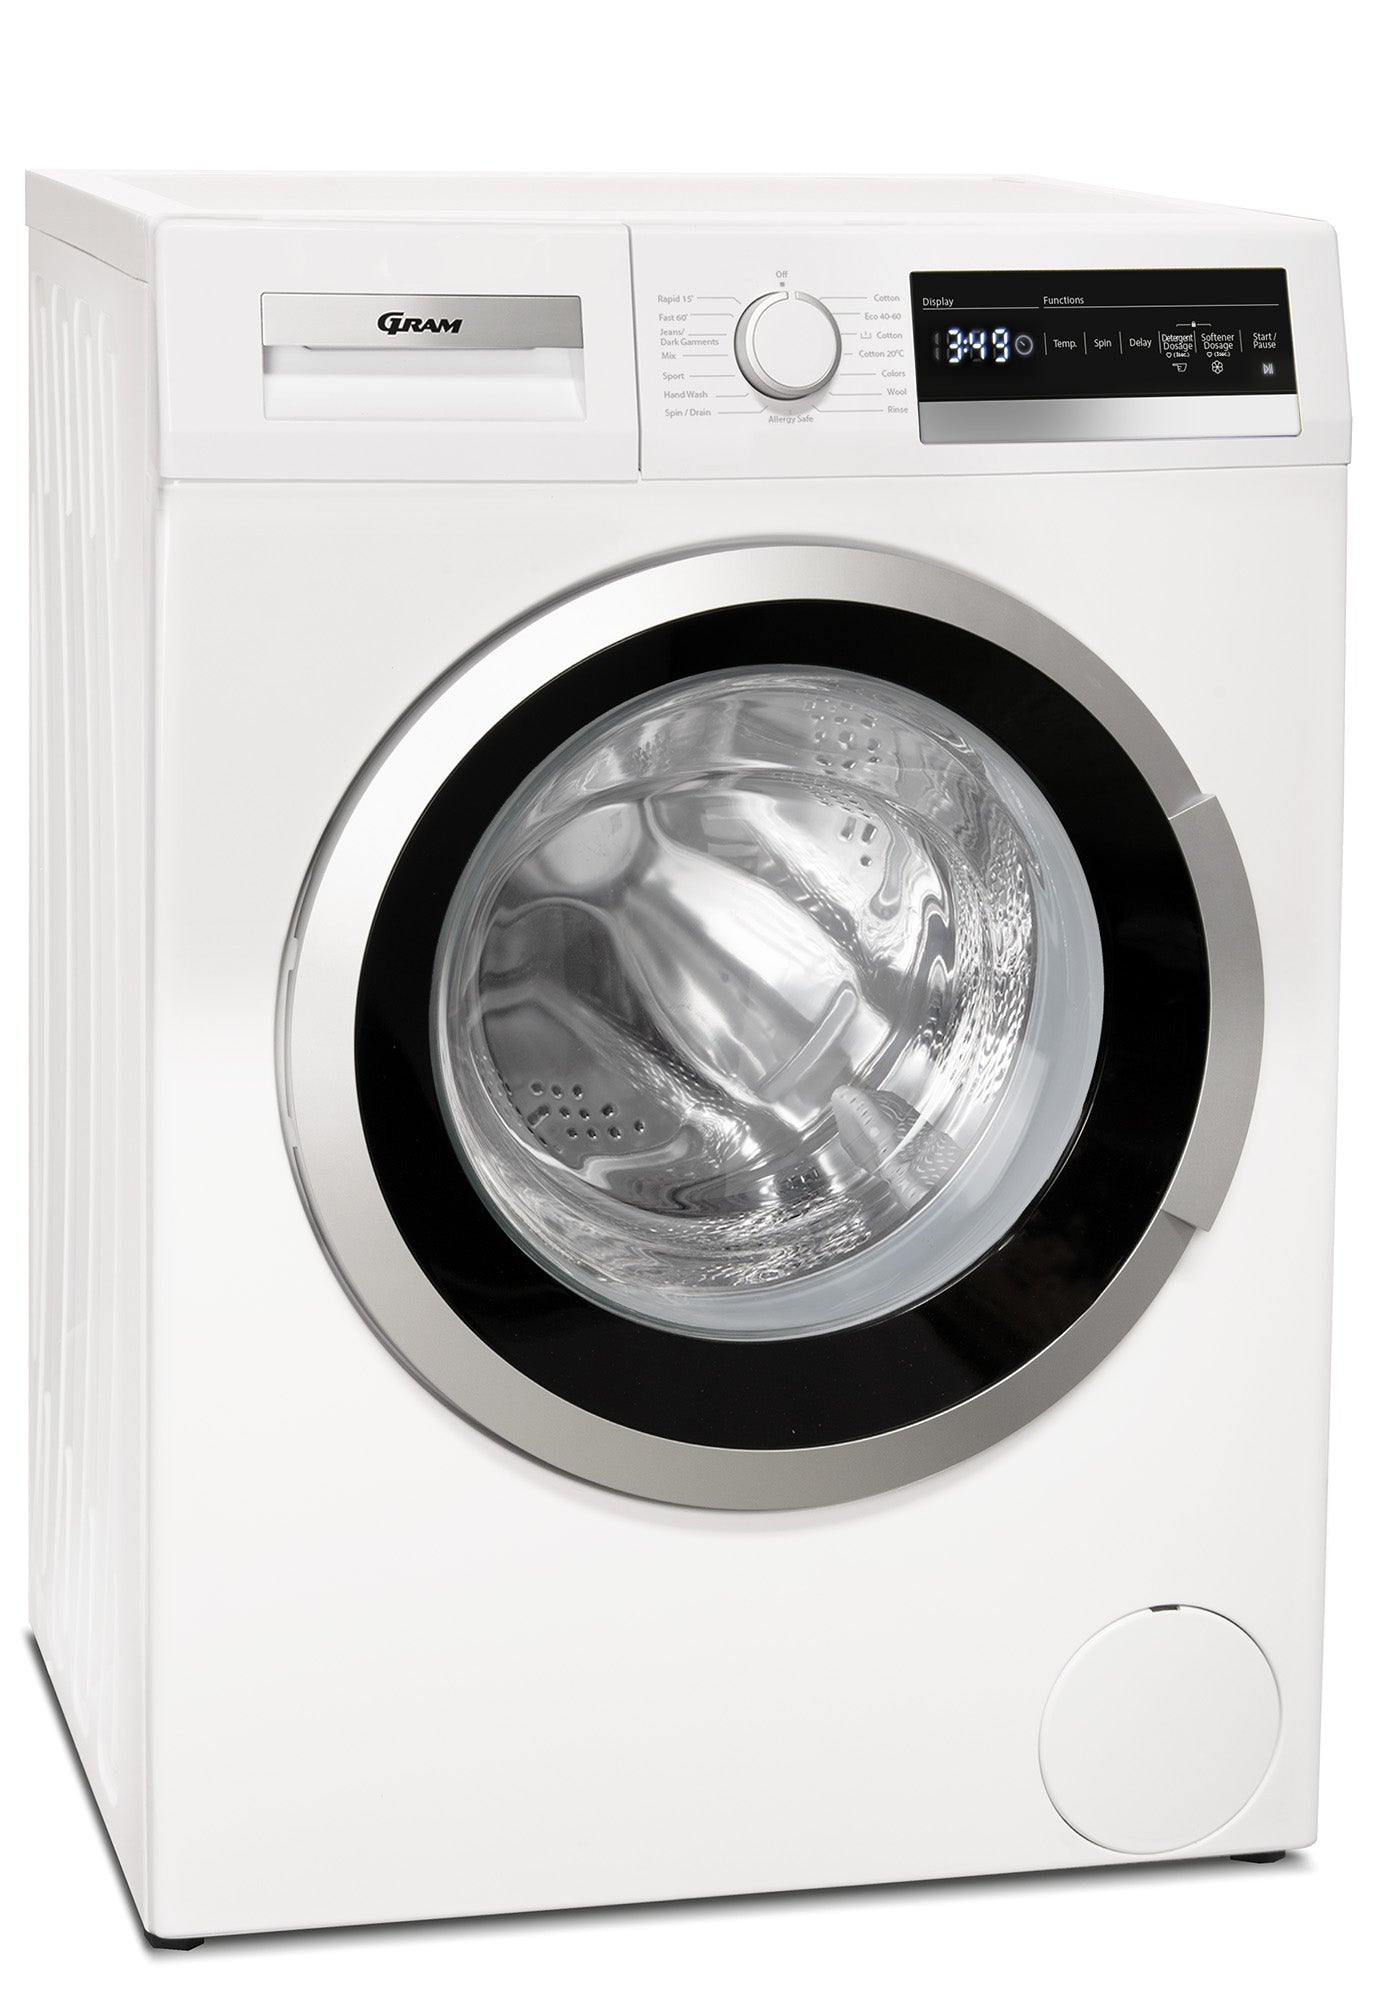 Gram WDE 71914-90 - Frontbetjent vaskemaskine